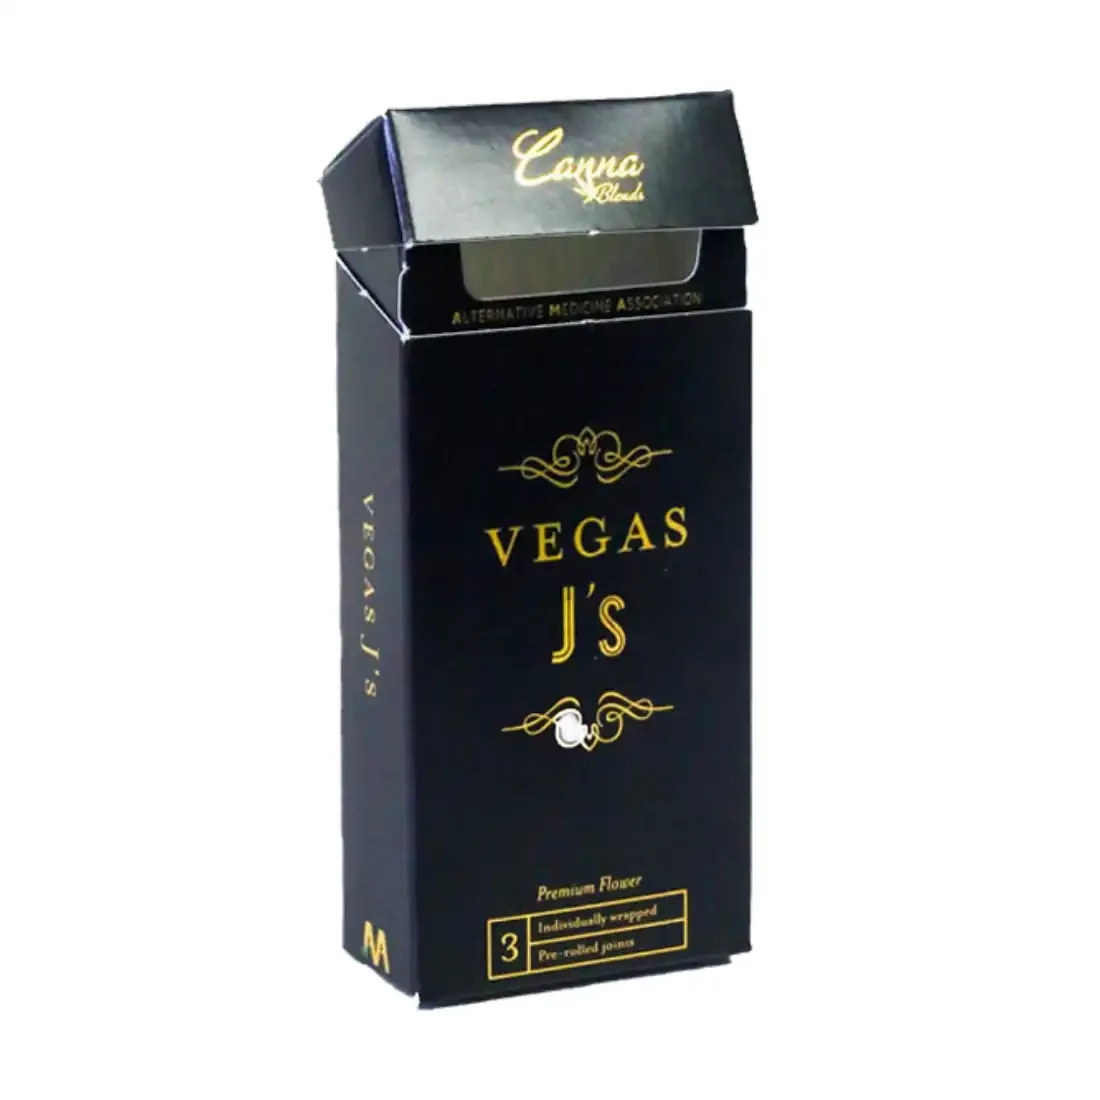 custom-cbd-cigarette-boxes